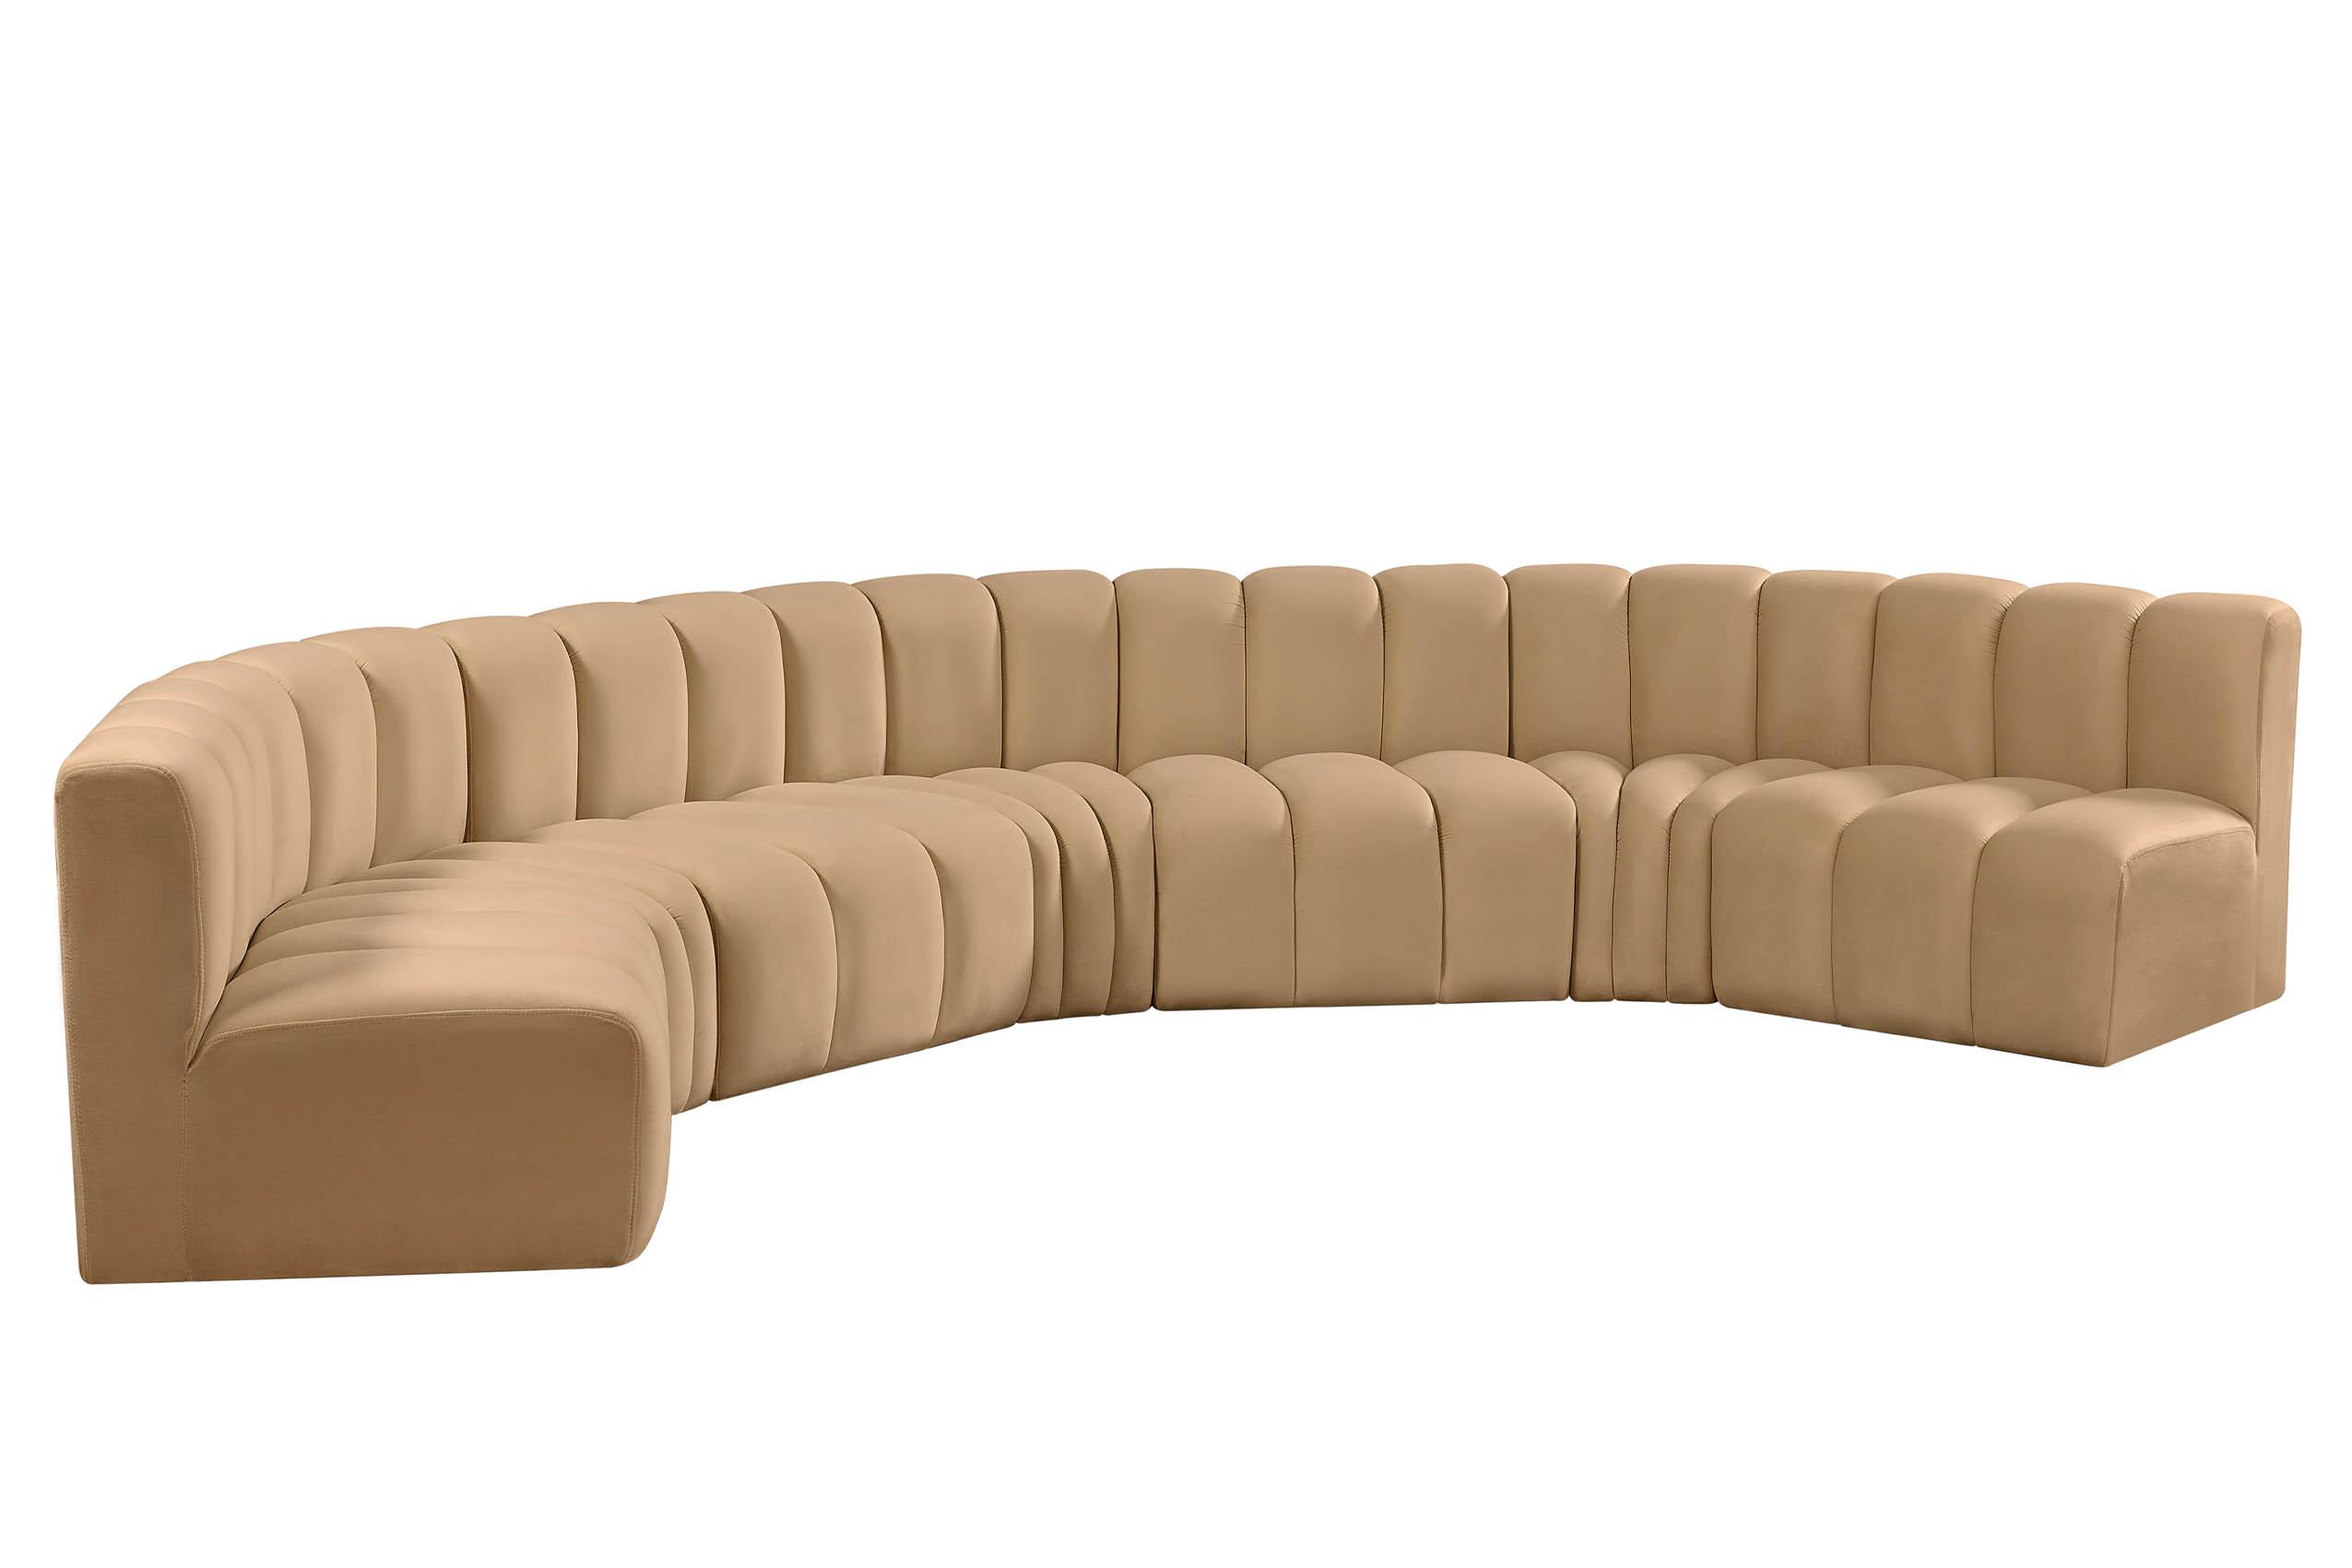 

    
103Camel-S7B Meridian Furniture Modular Sectional Sofa
